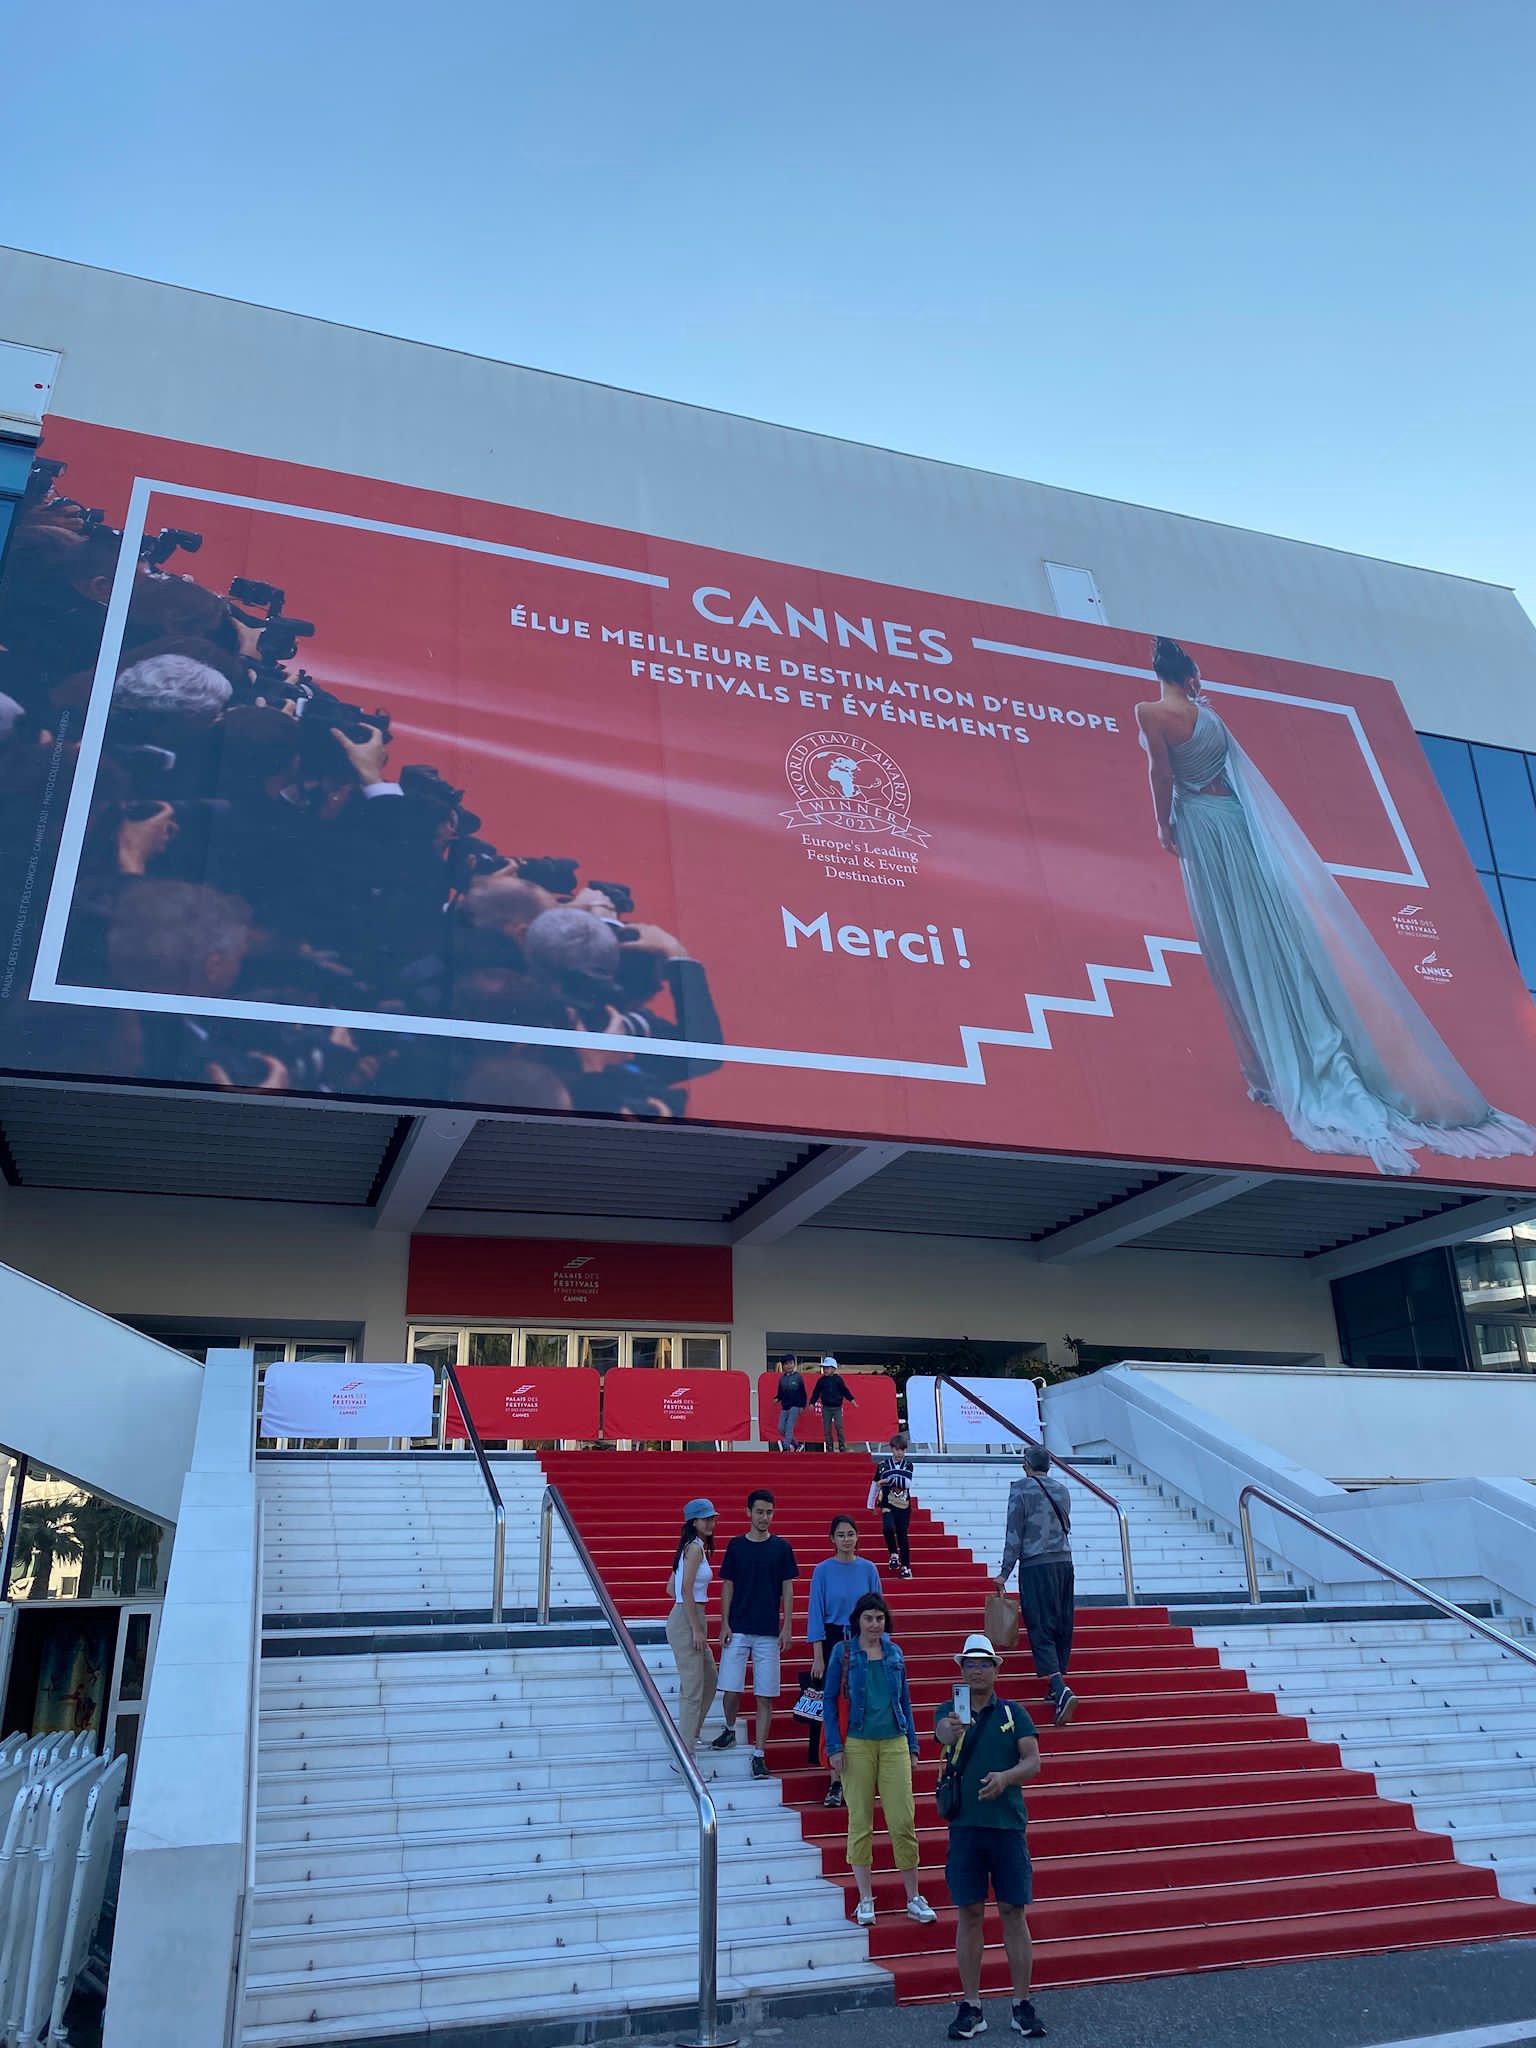  Film Festiva, Cannes 